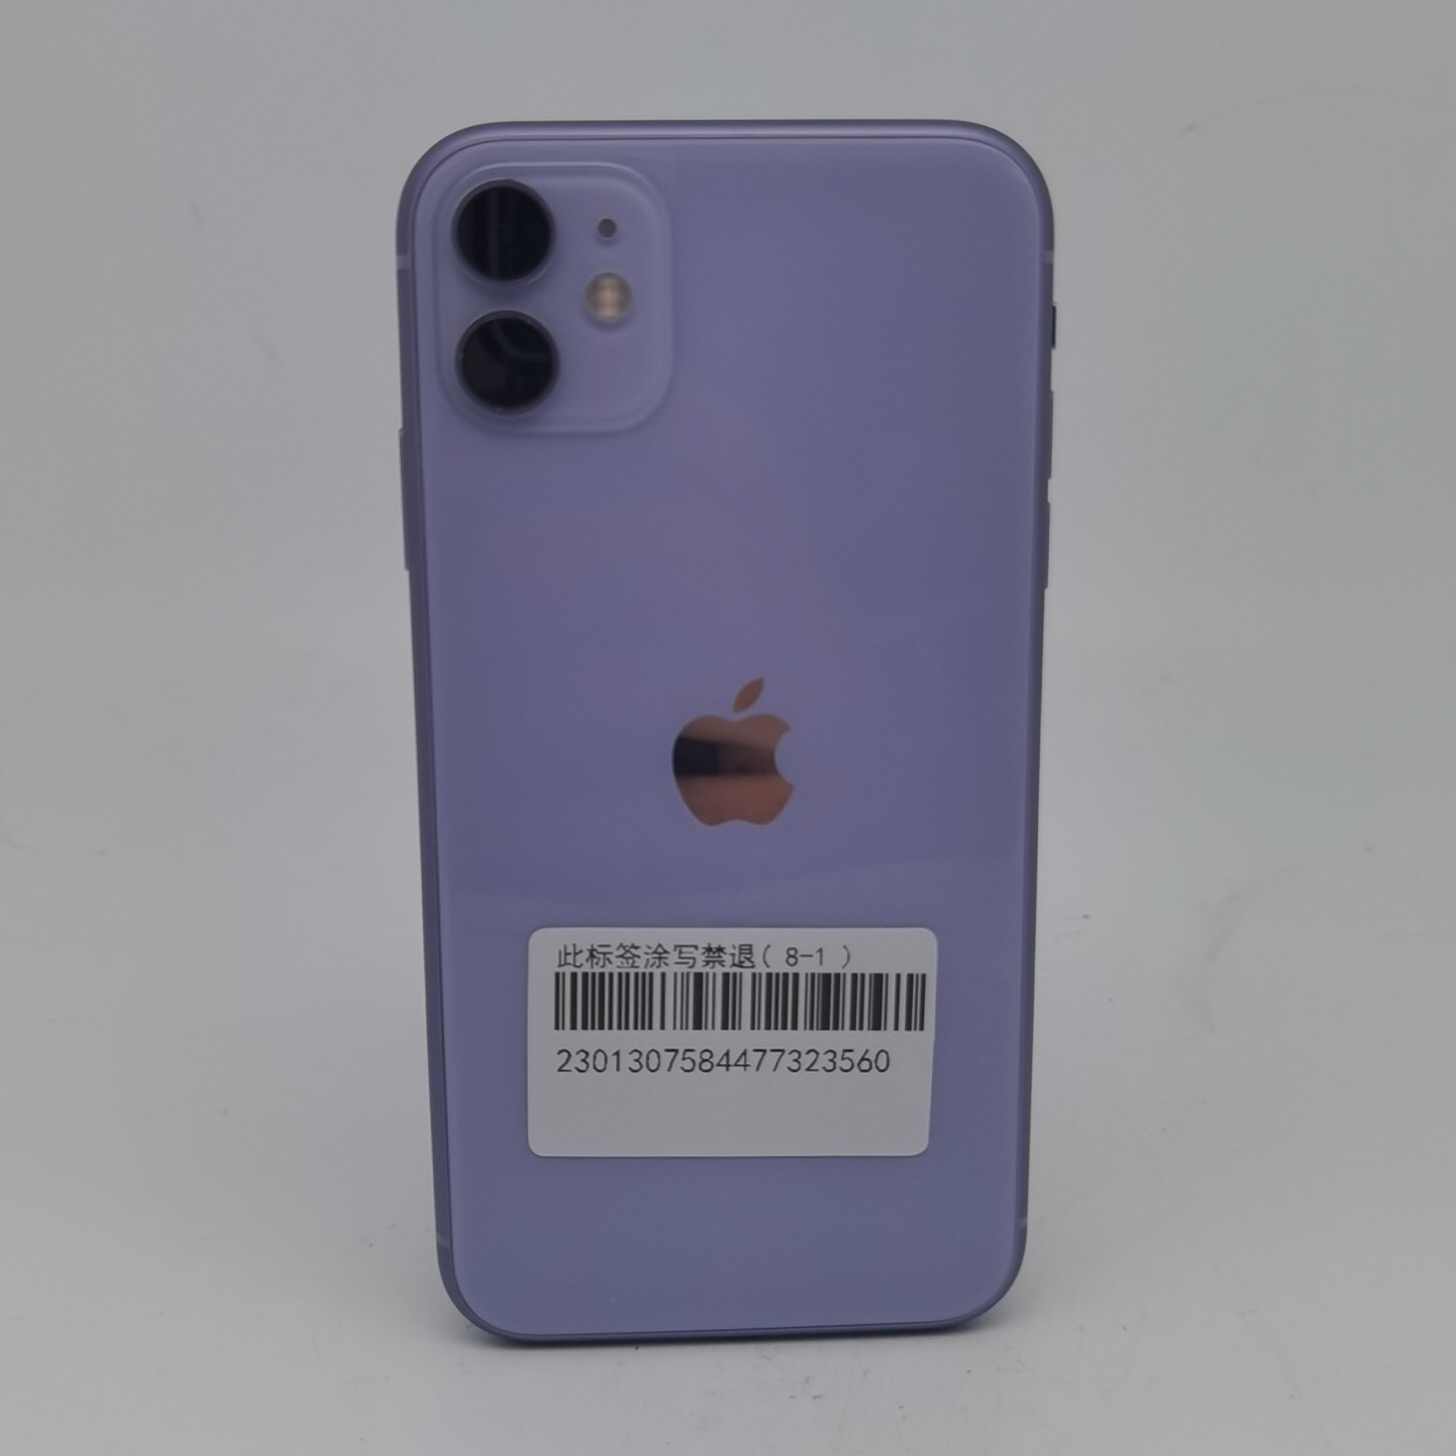 苹果【iPhone 11】紫色 256G 国行 95新 